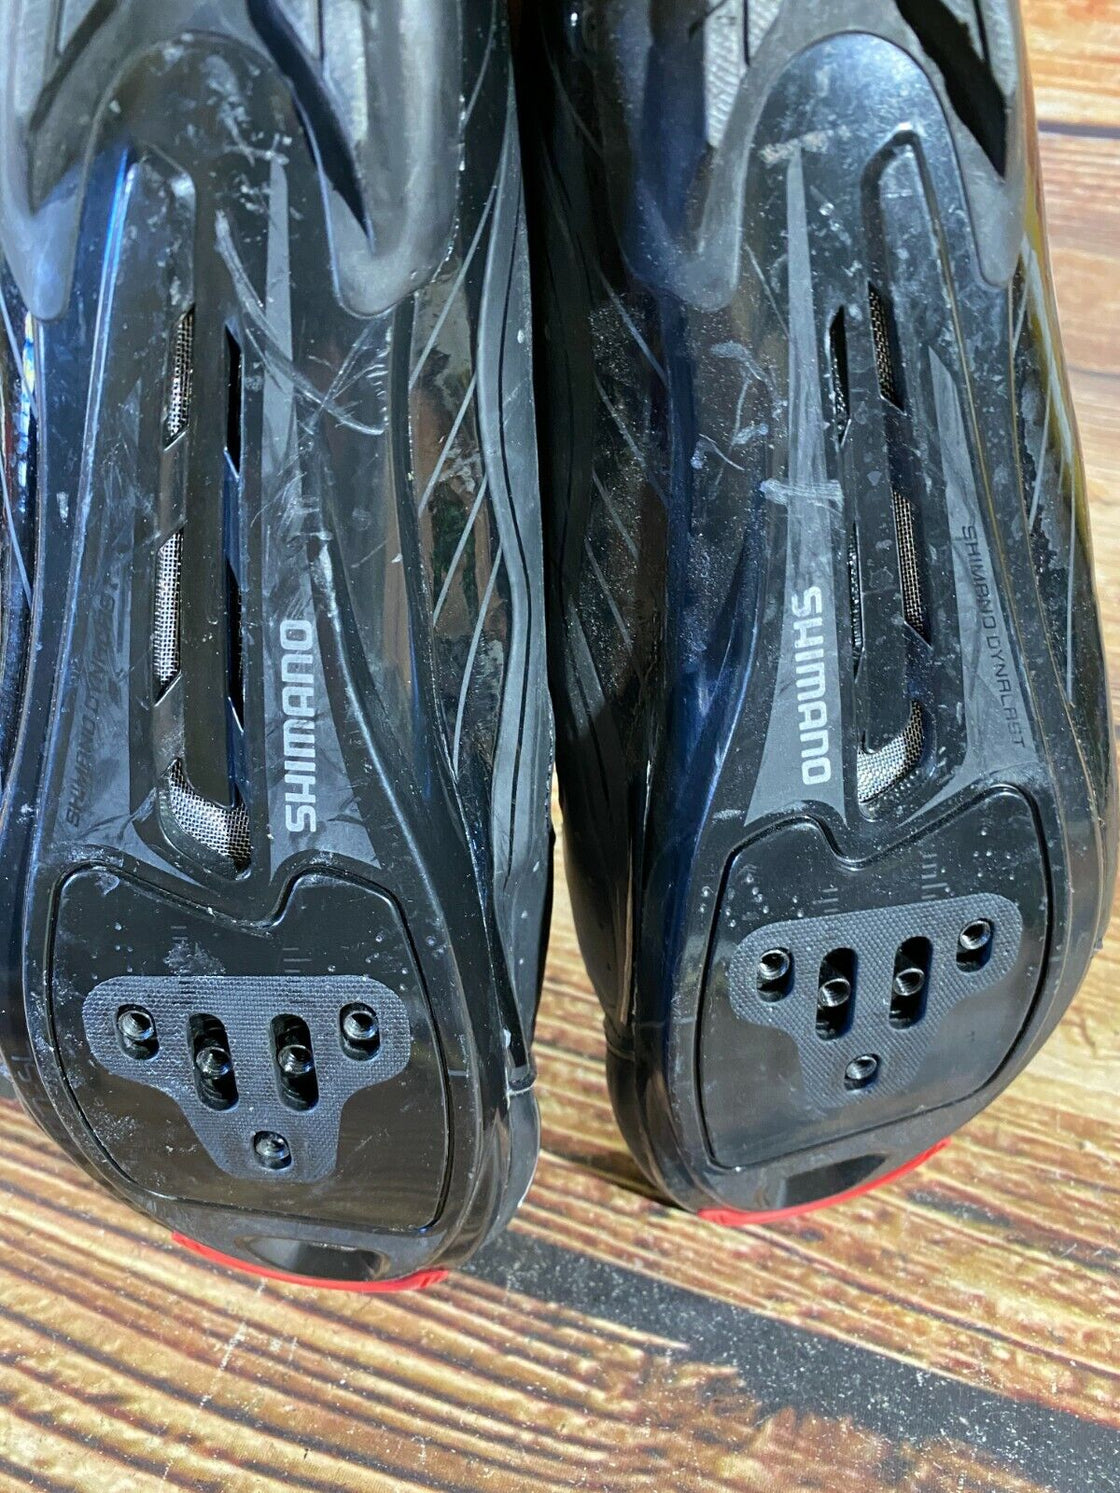 SHIMANO R065 Road Cycling Shoes Biking Boots 3 Bolts Size EU43, US8.9